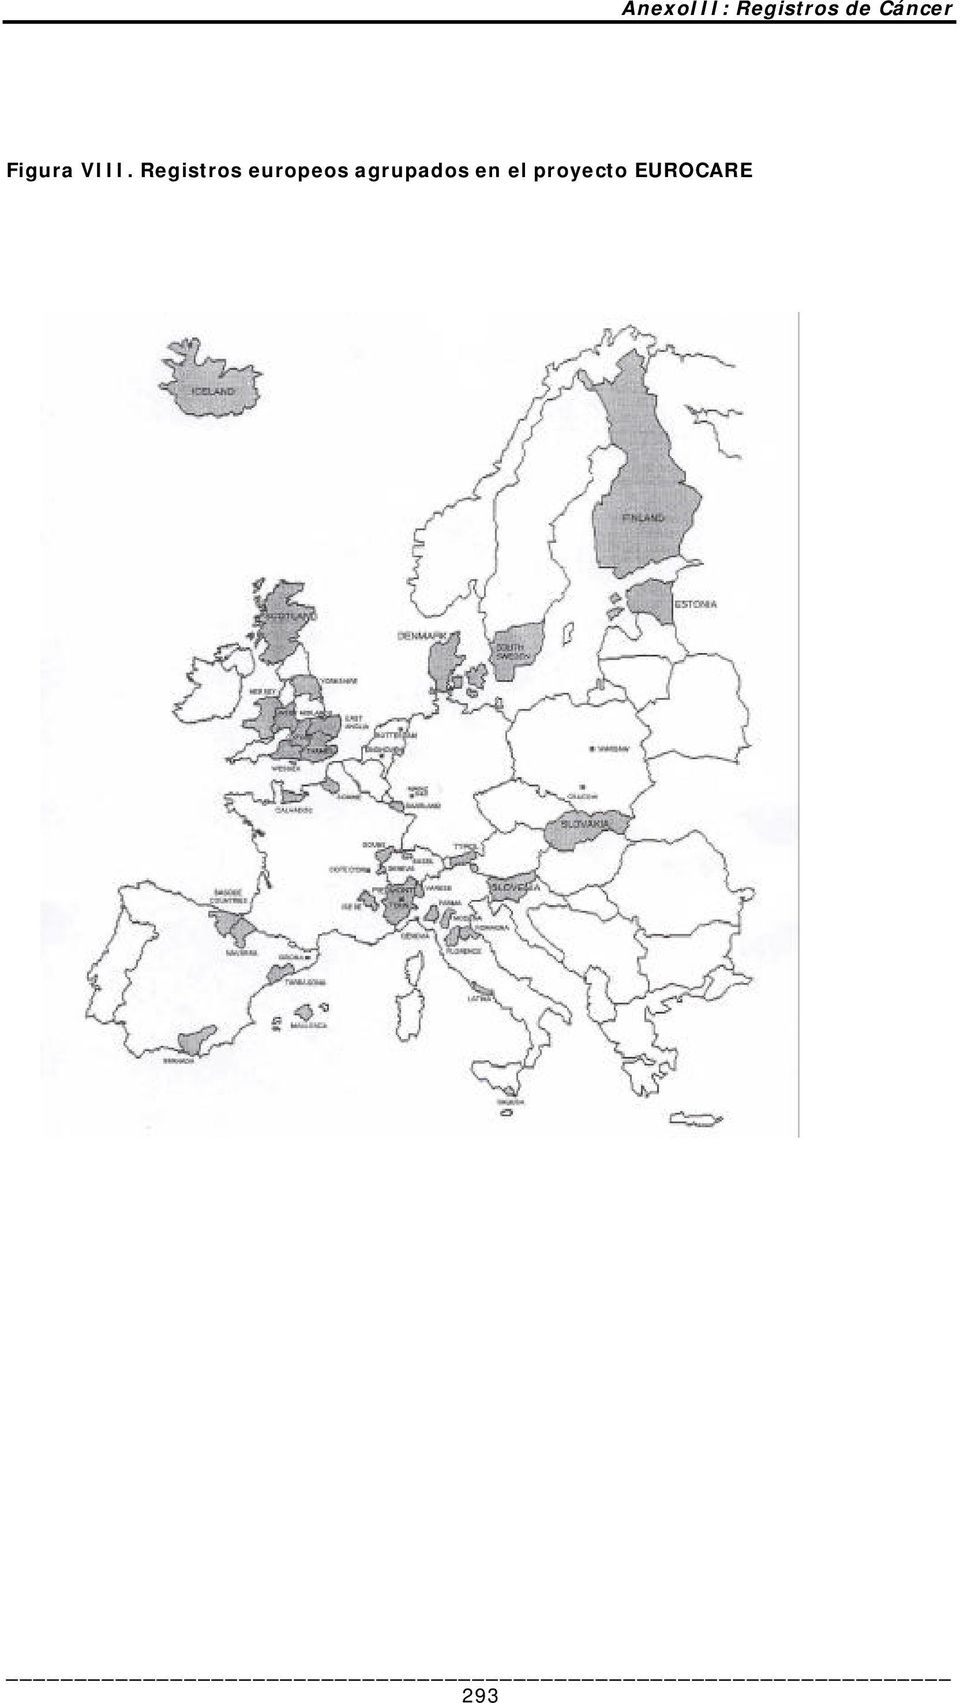 Registros europeos